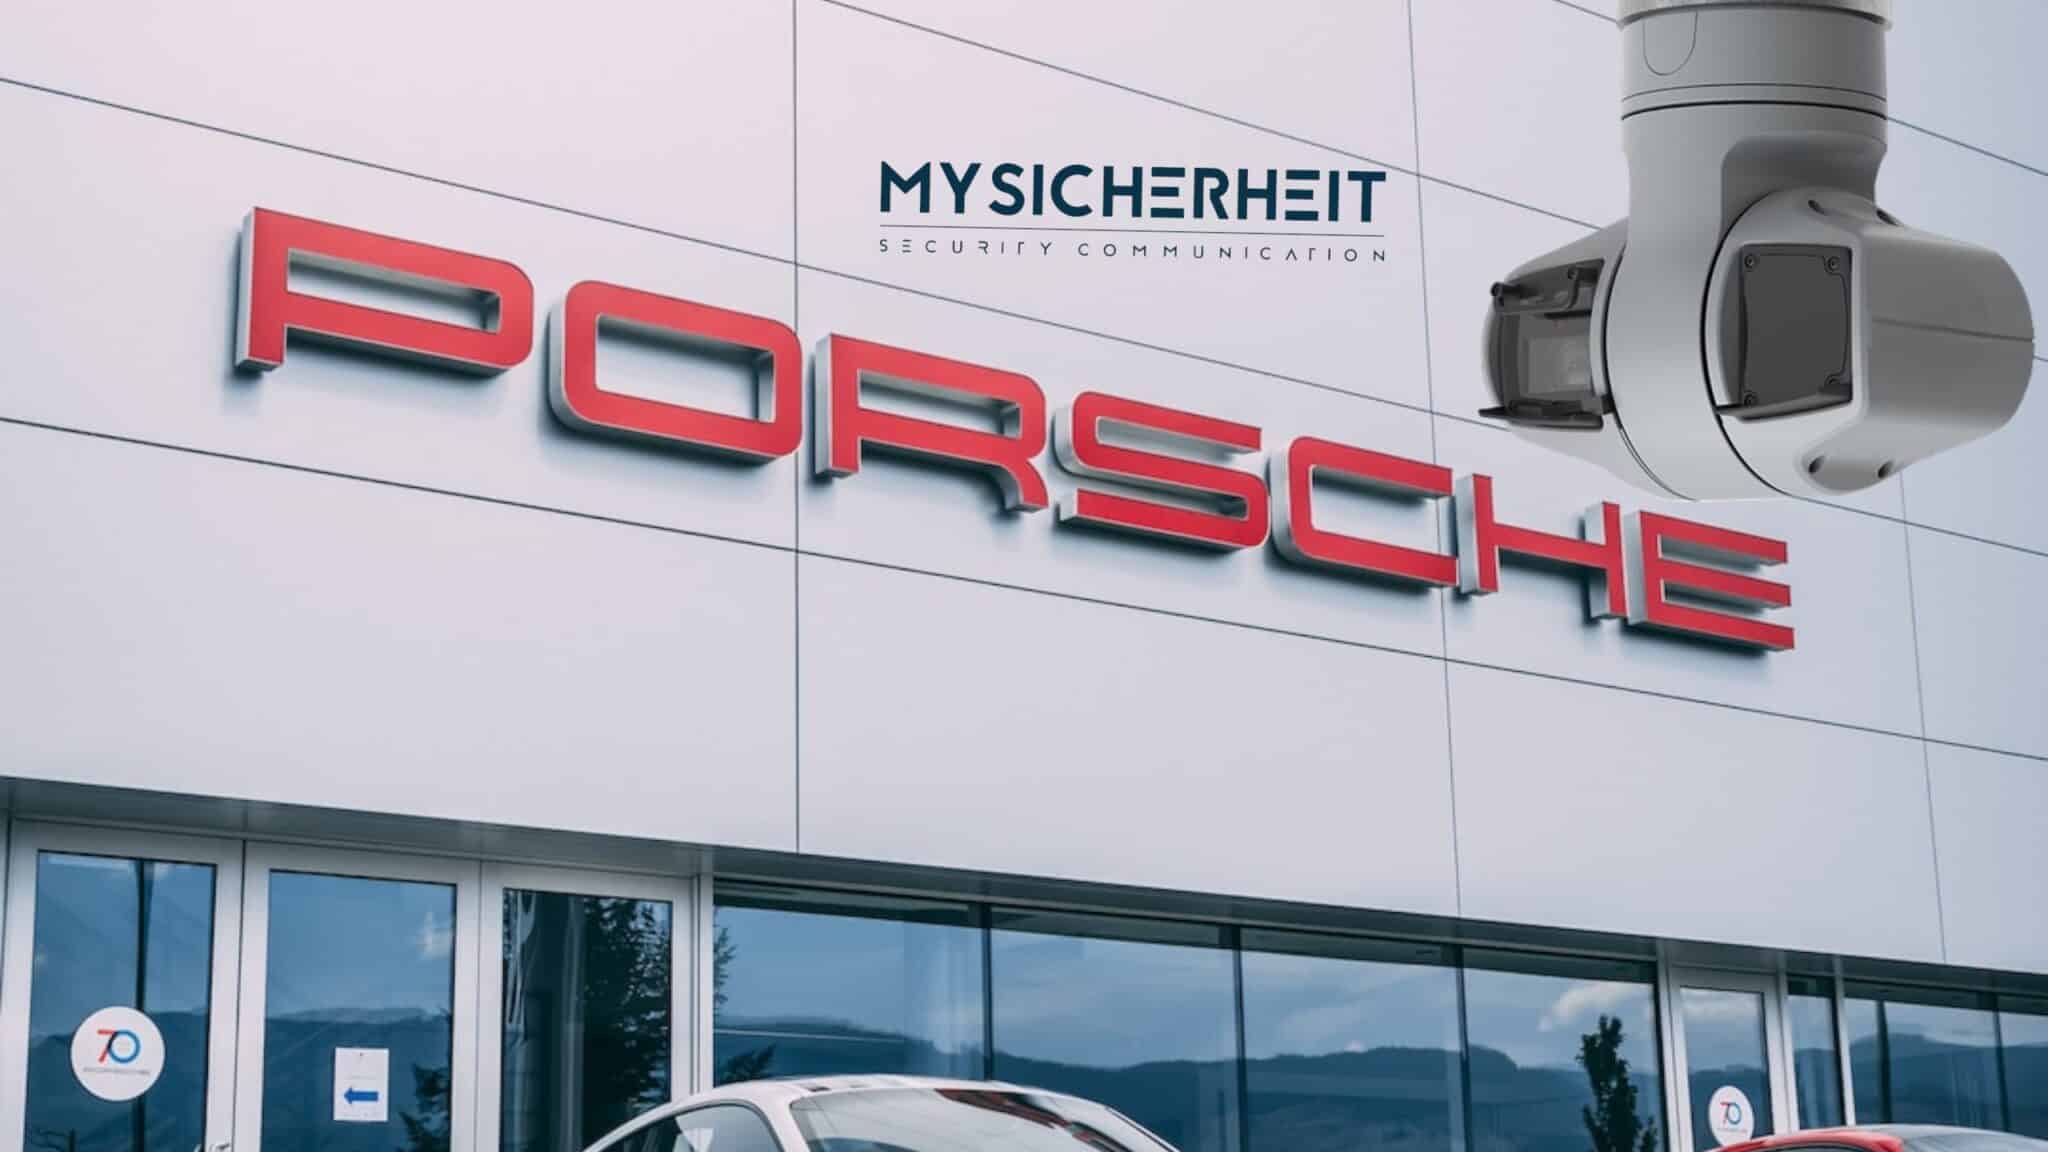 MySicherheit Technology GmbH stellt bahnbrechendes KI-basiertes Sicherheitskonzept für Autohäuser vor